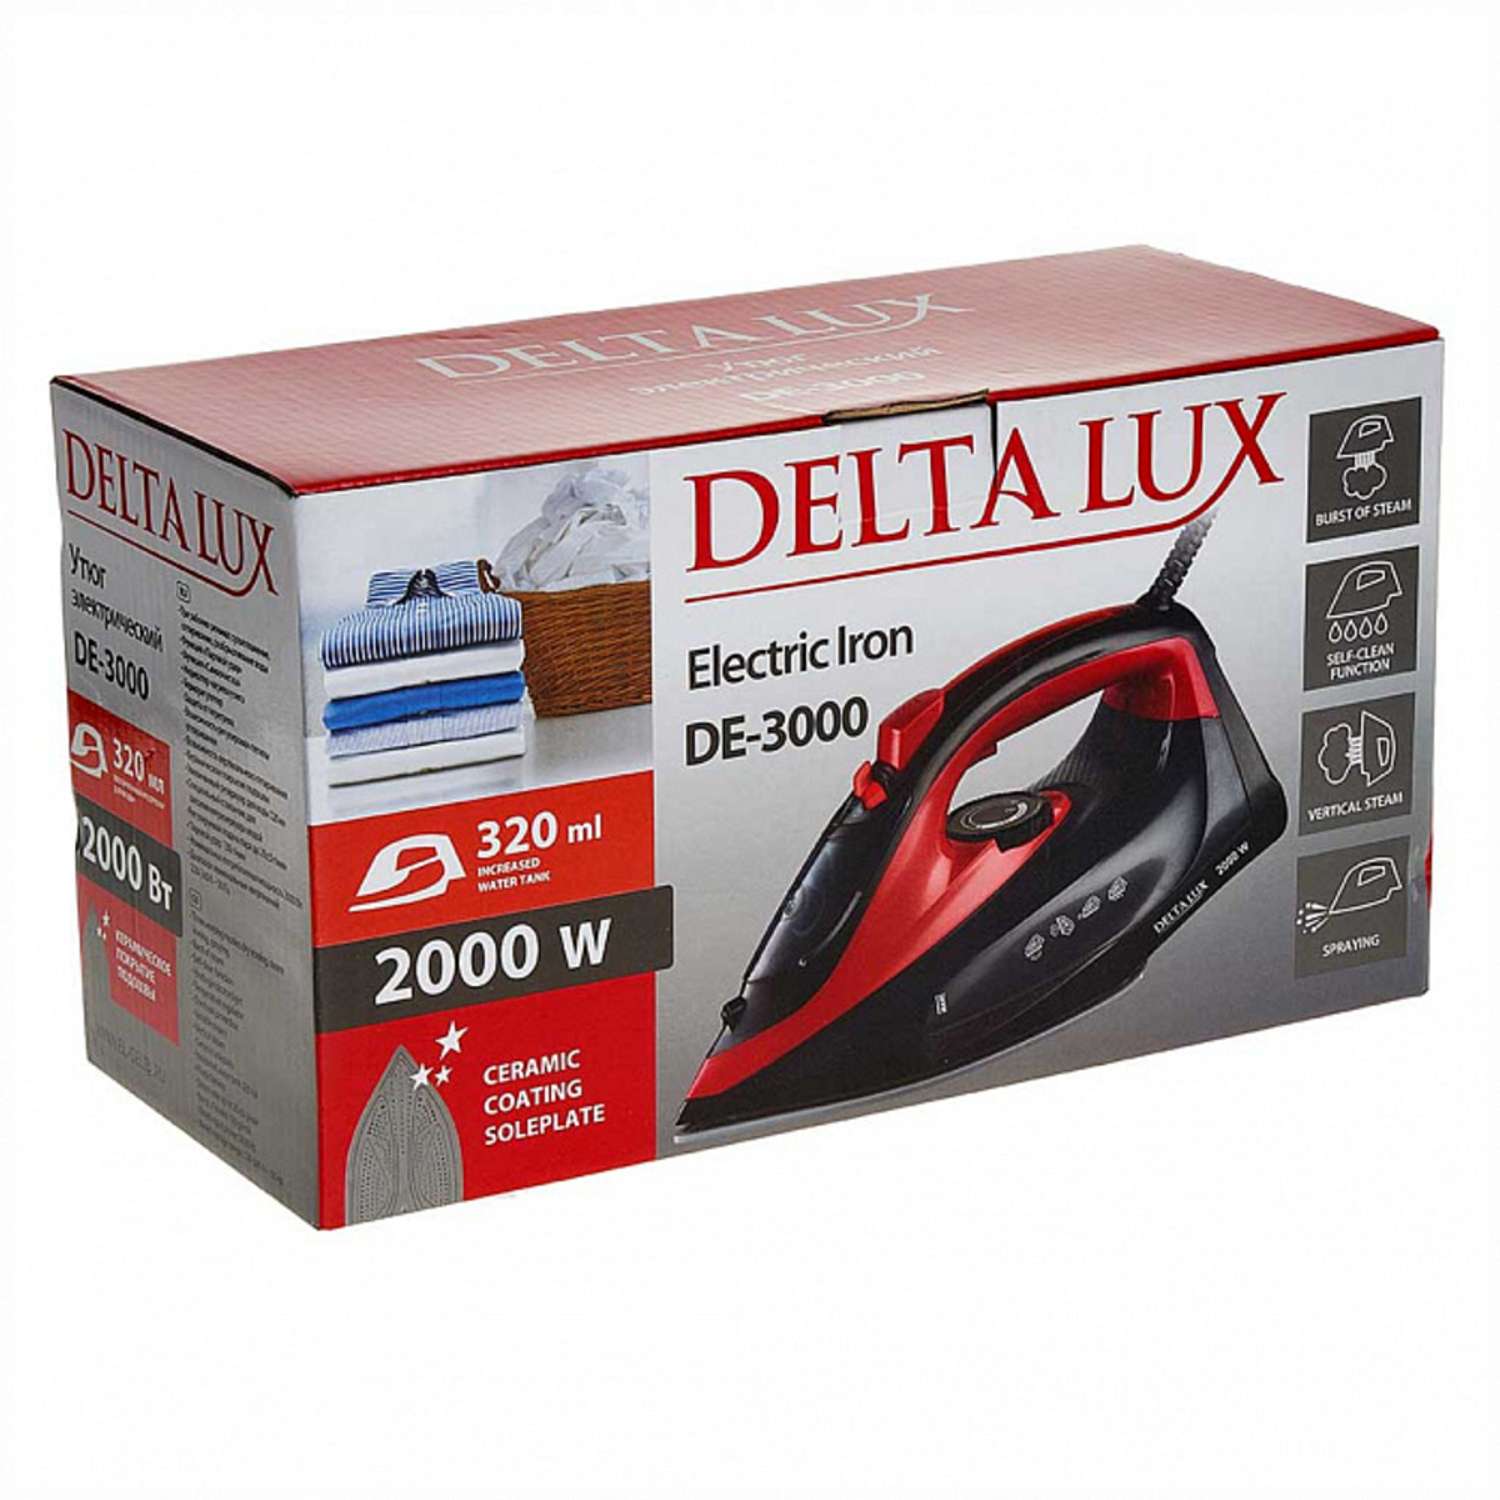 Утюг Delta Lux DE-3000 черный с красным 2000 Вт керамика самоочистка паровой удар 320 мл - фото 5